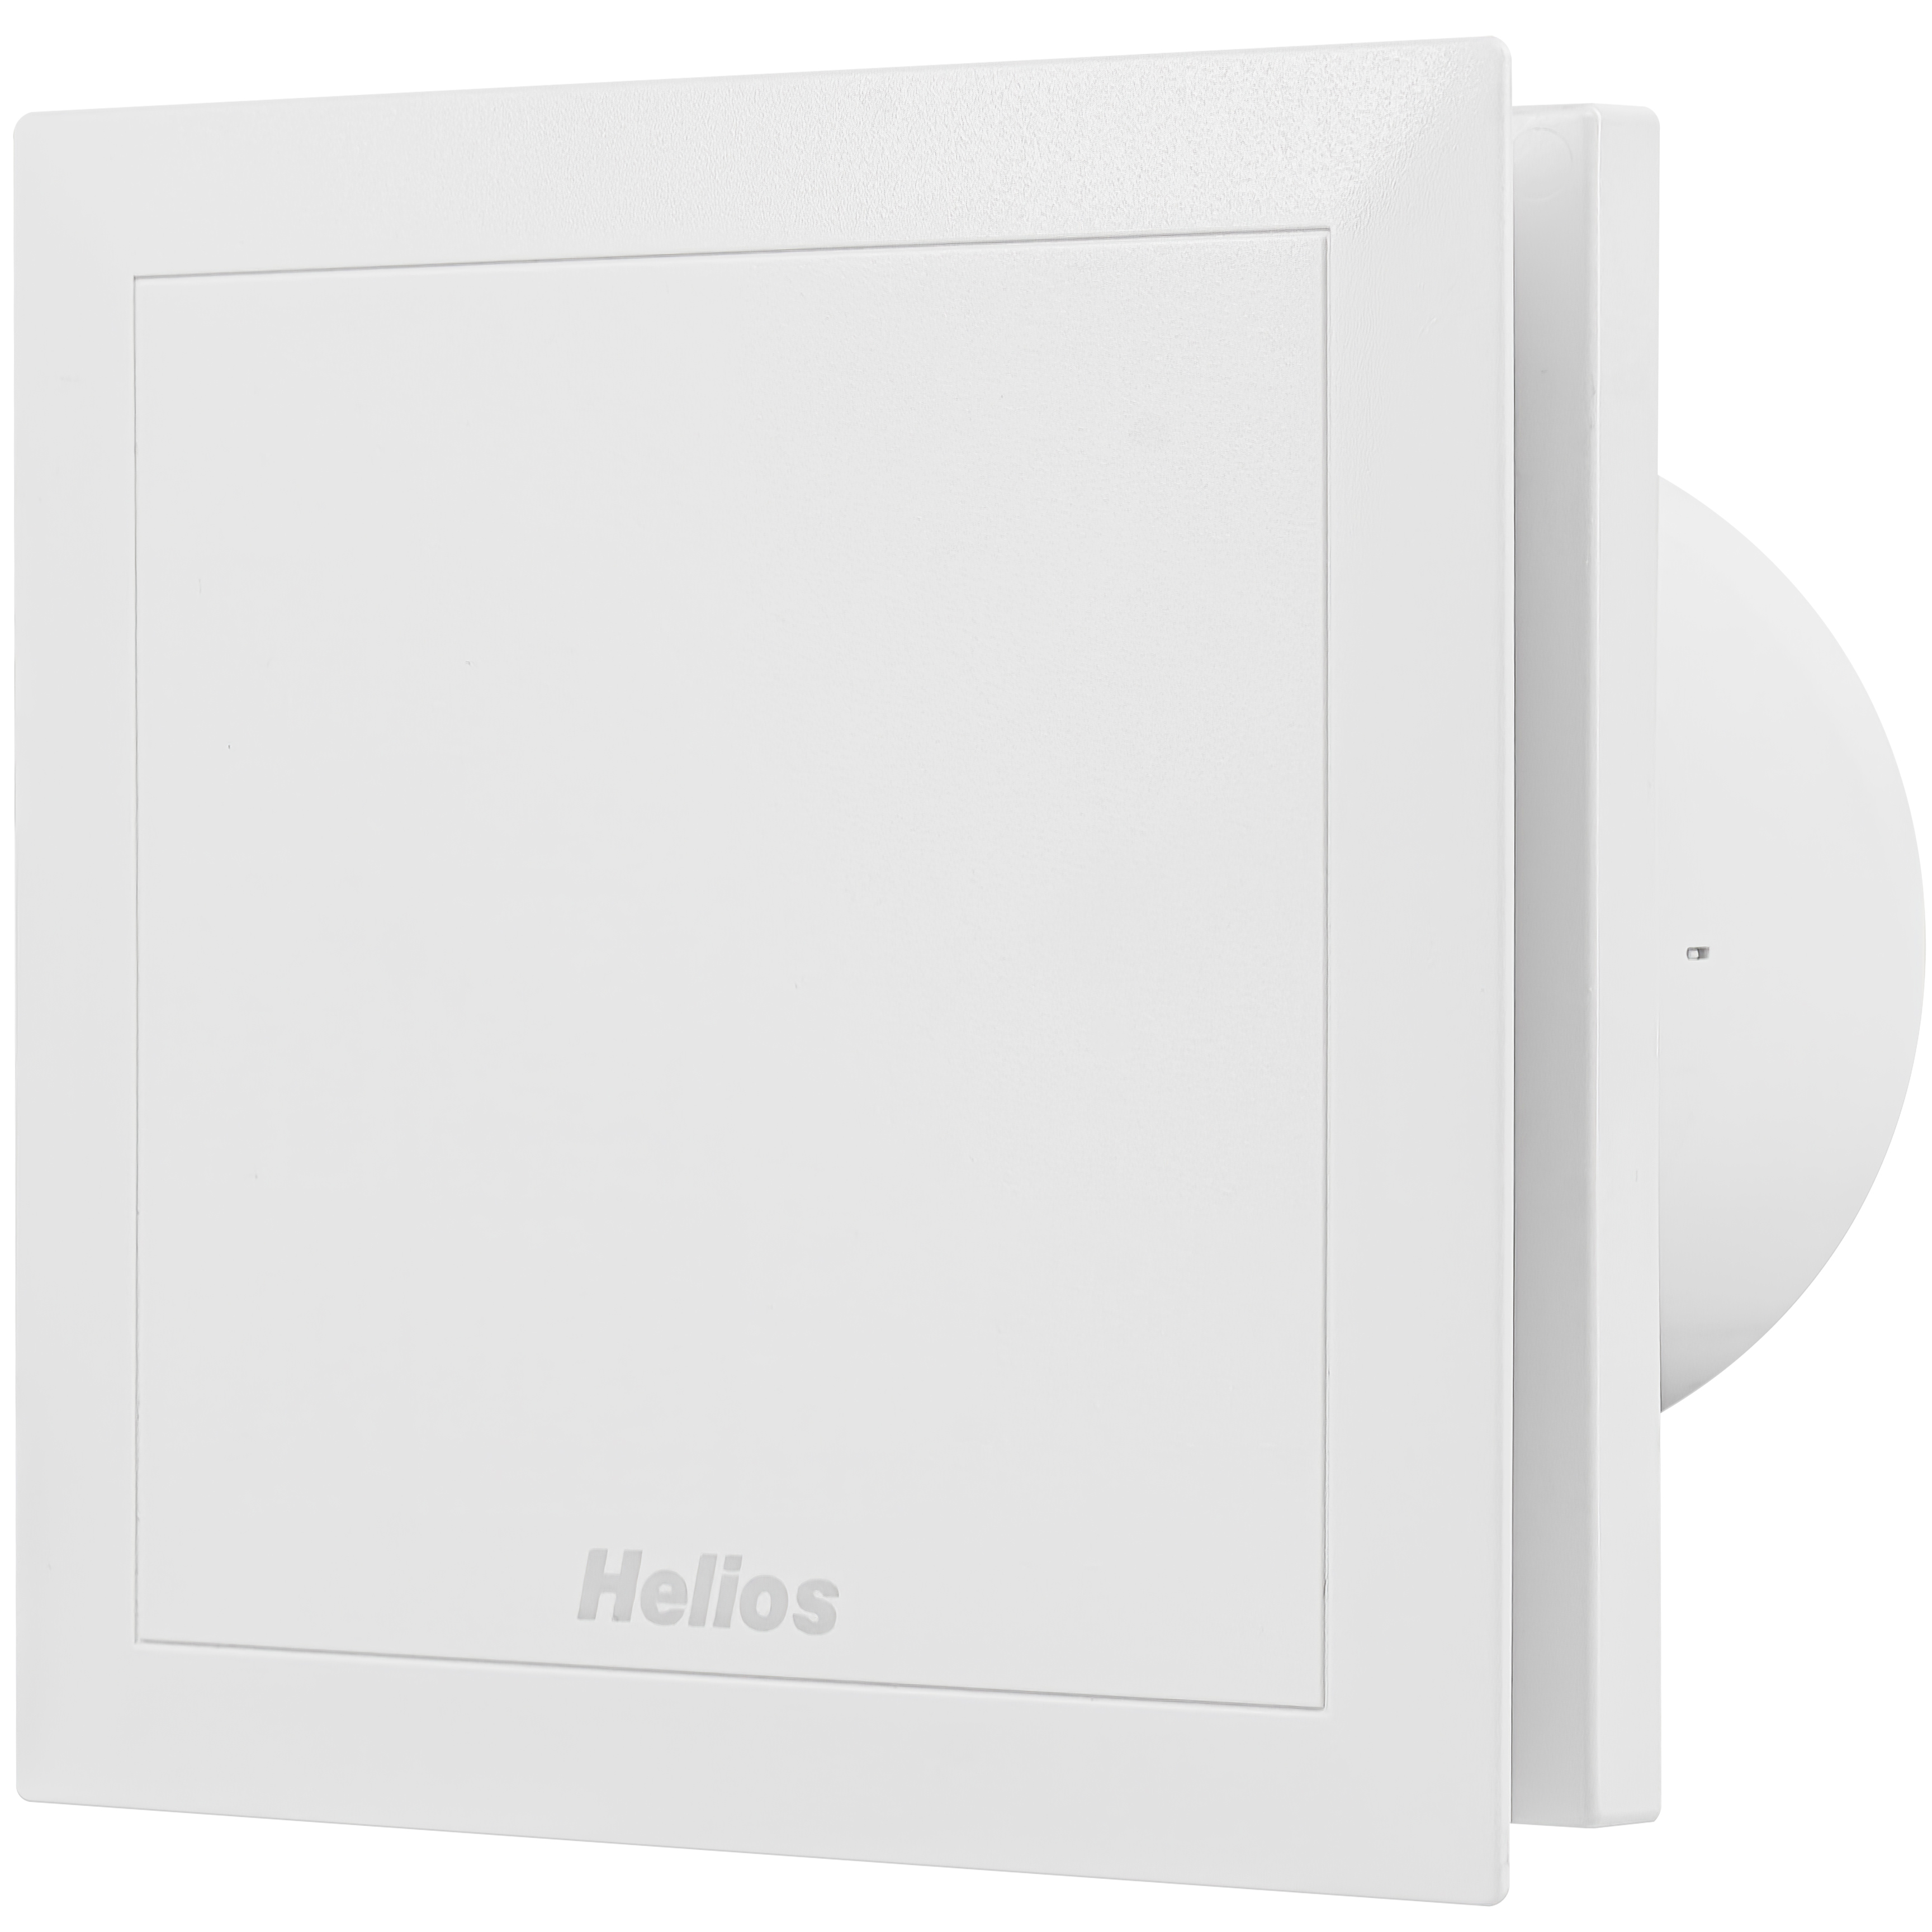 Вентилятор с таймером отключения Helios MiniVent M1/100 N/C